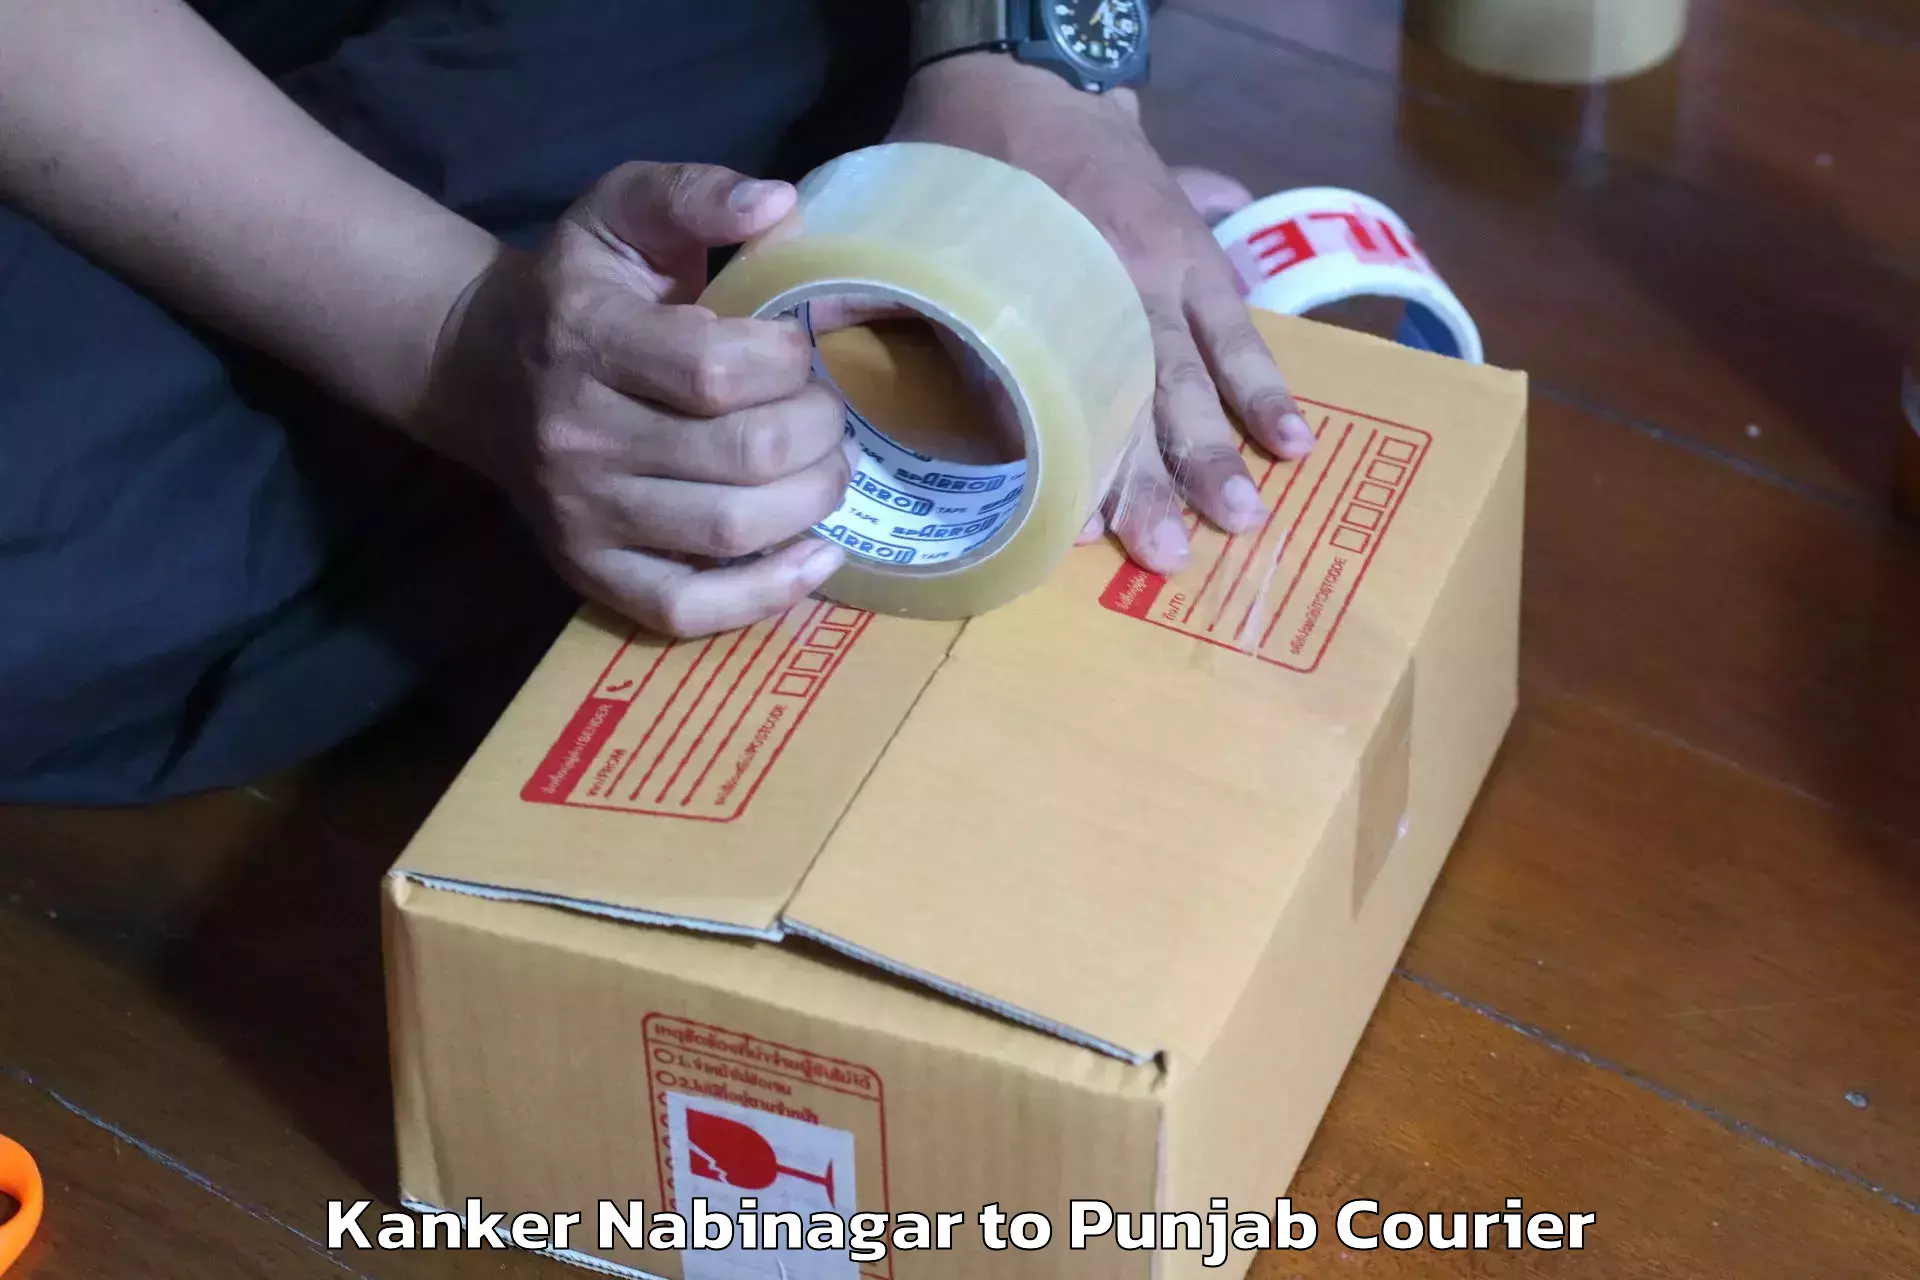 Furniture shipping services in Kanker Nabinagar to Punjab